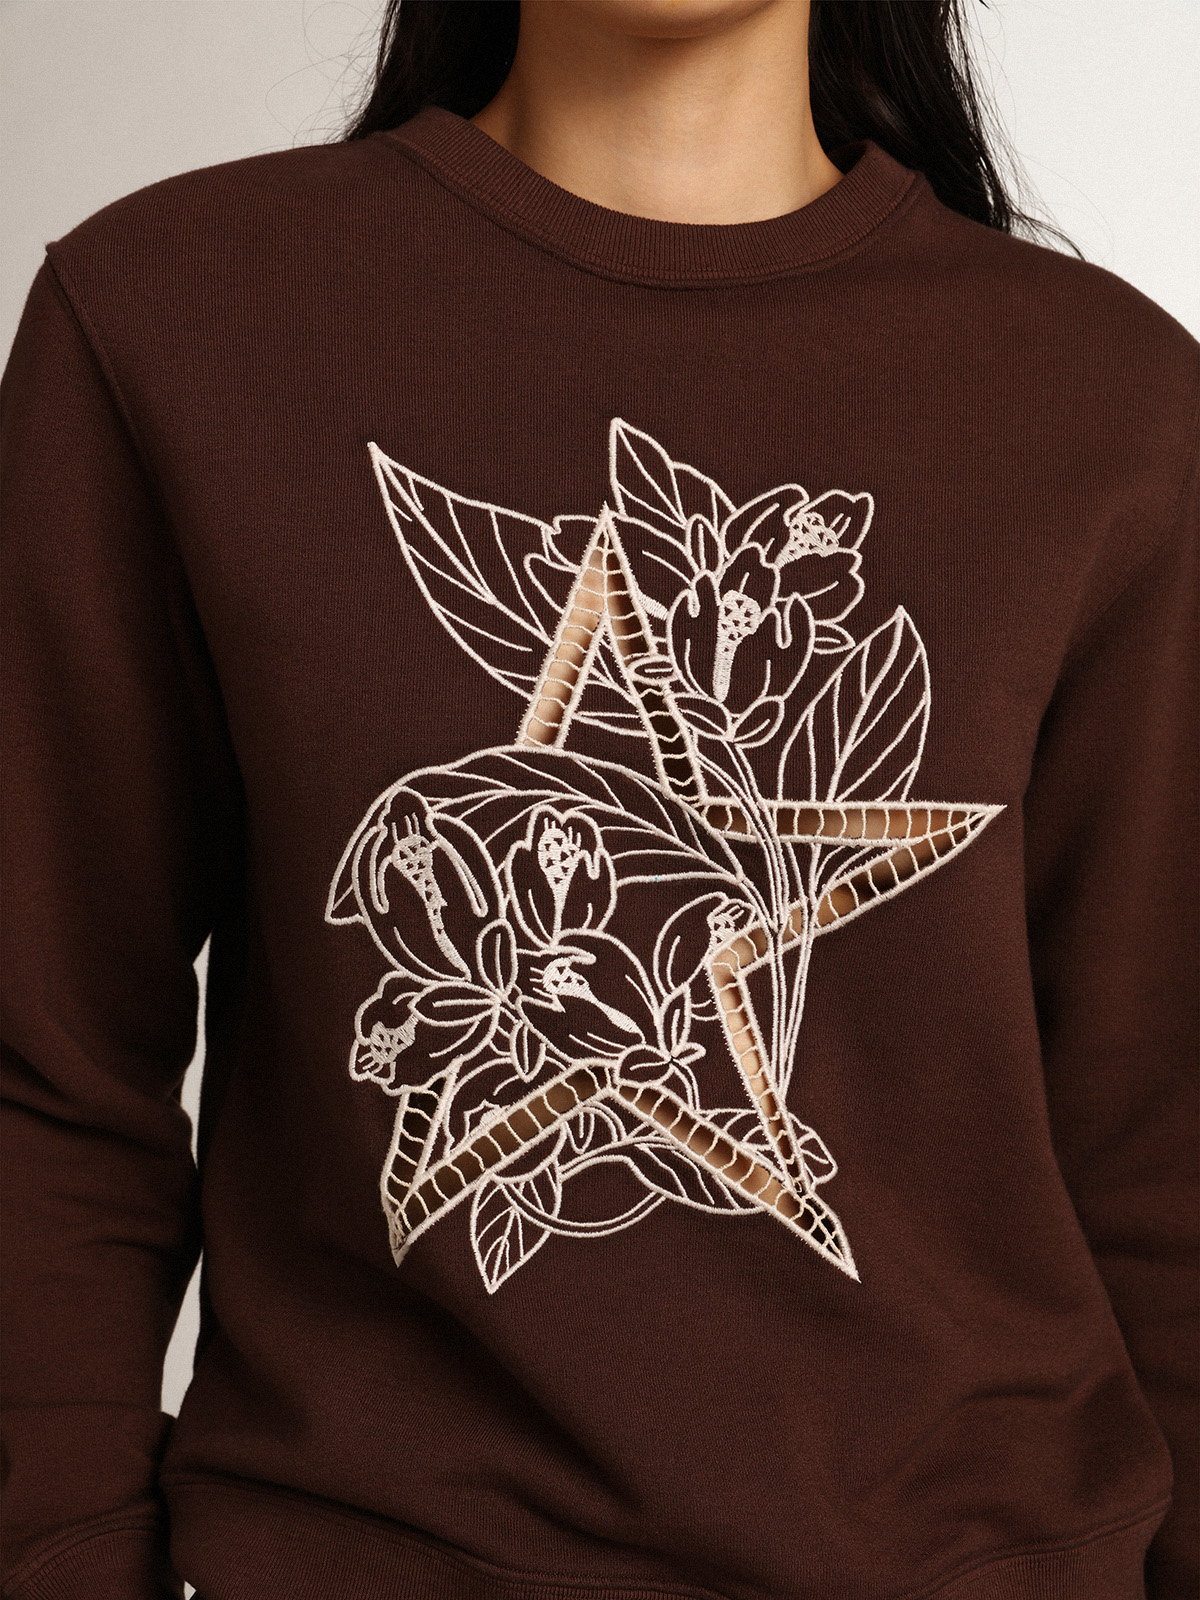 Louis Vuitton Embroidered Cotton Sweatshirt